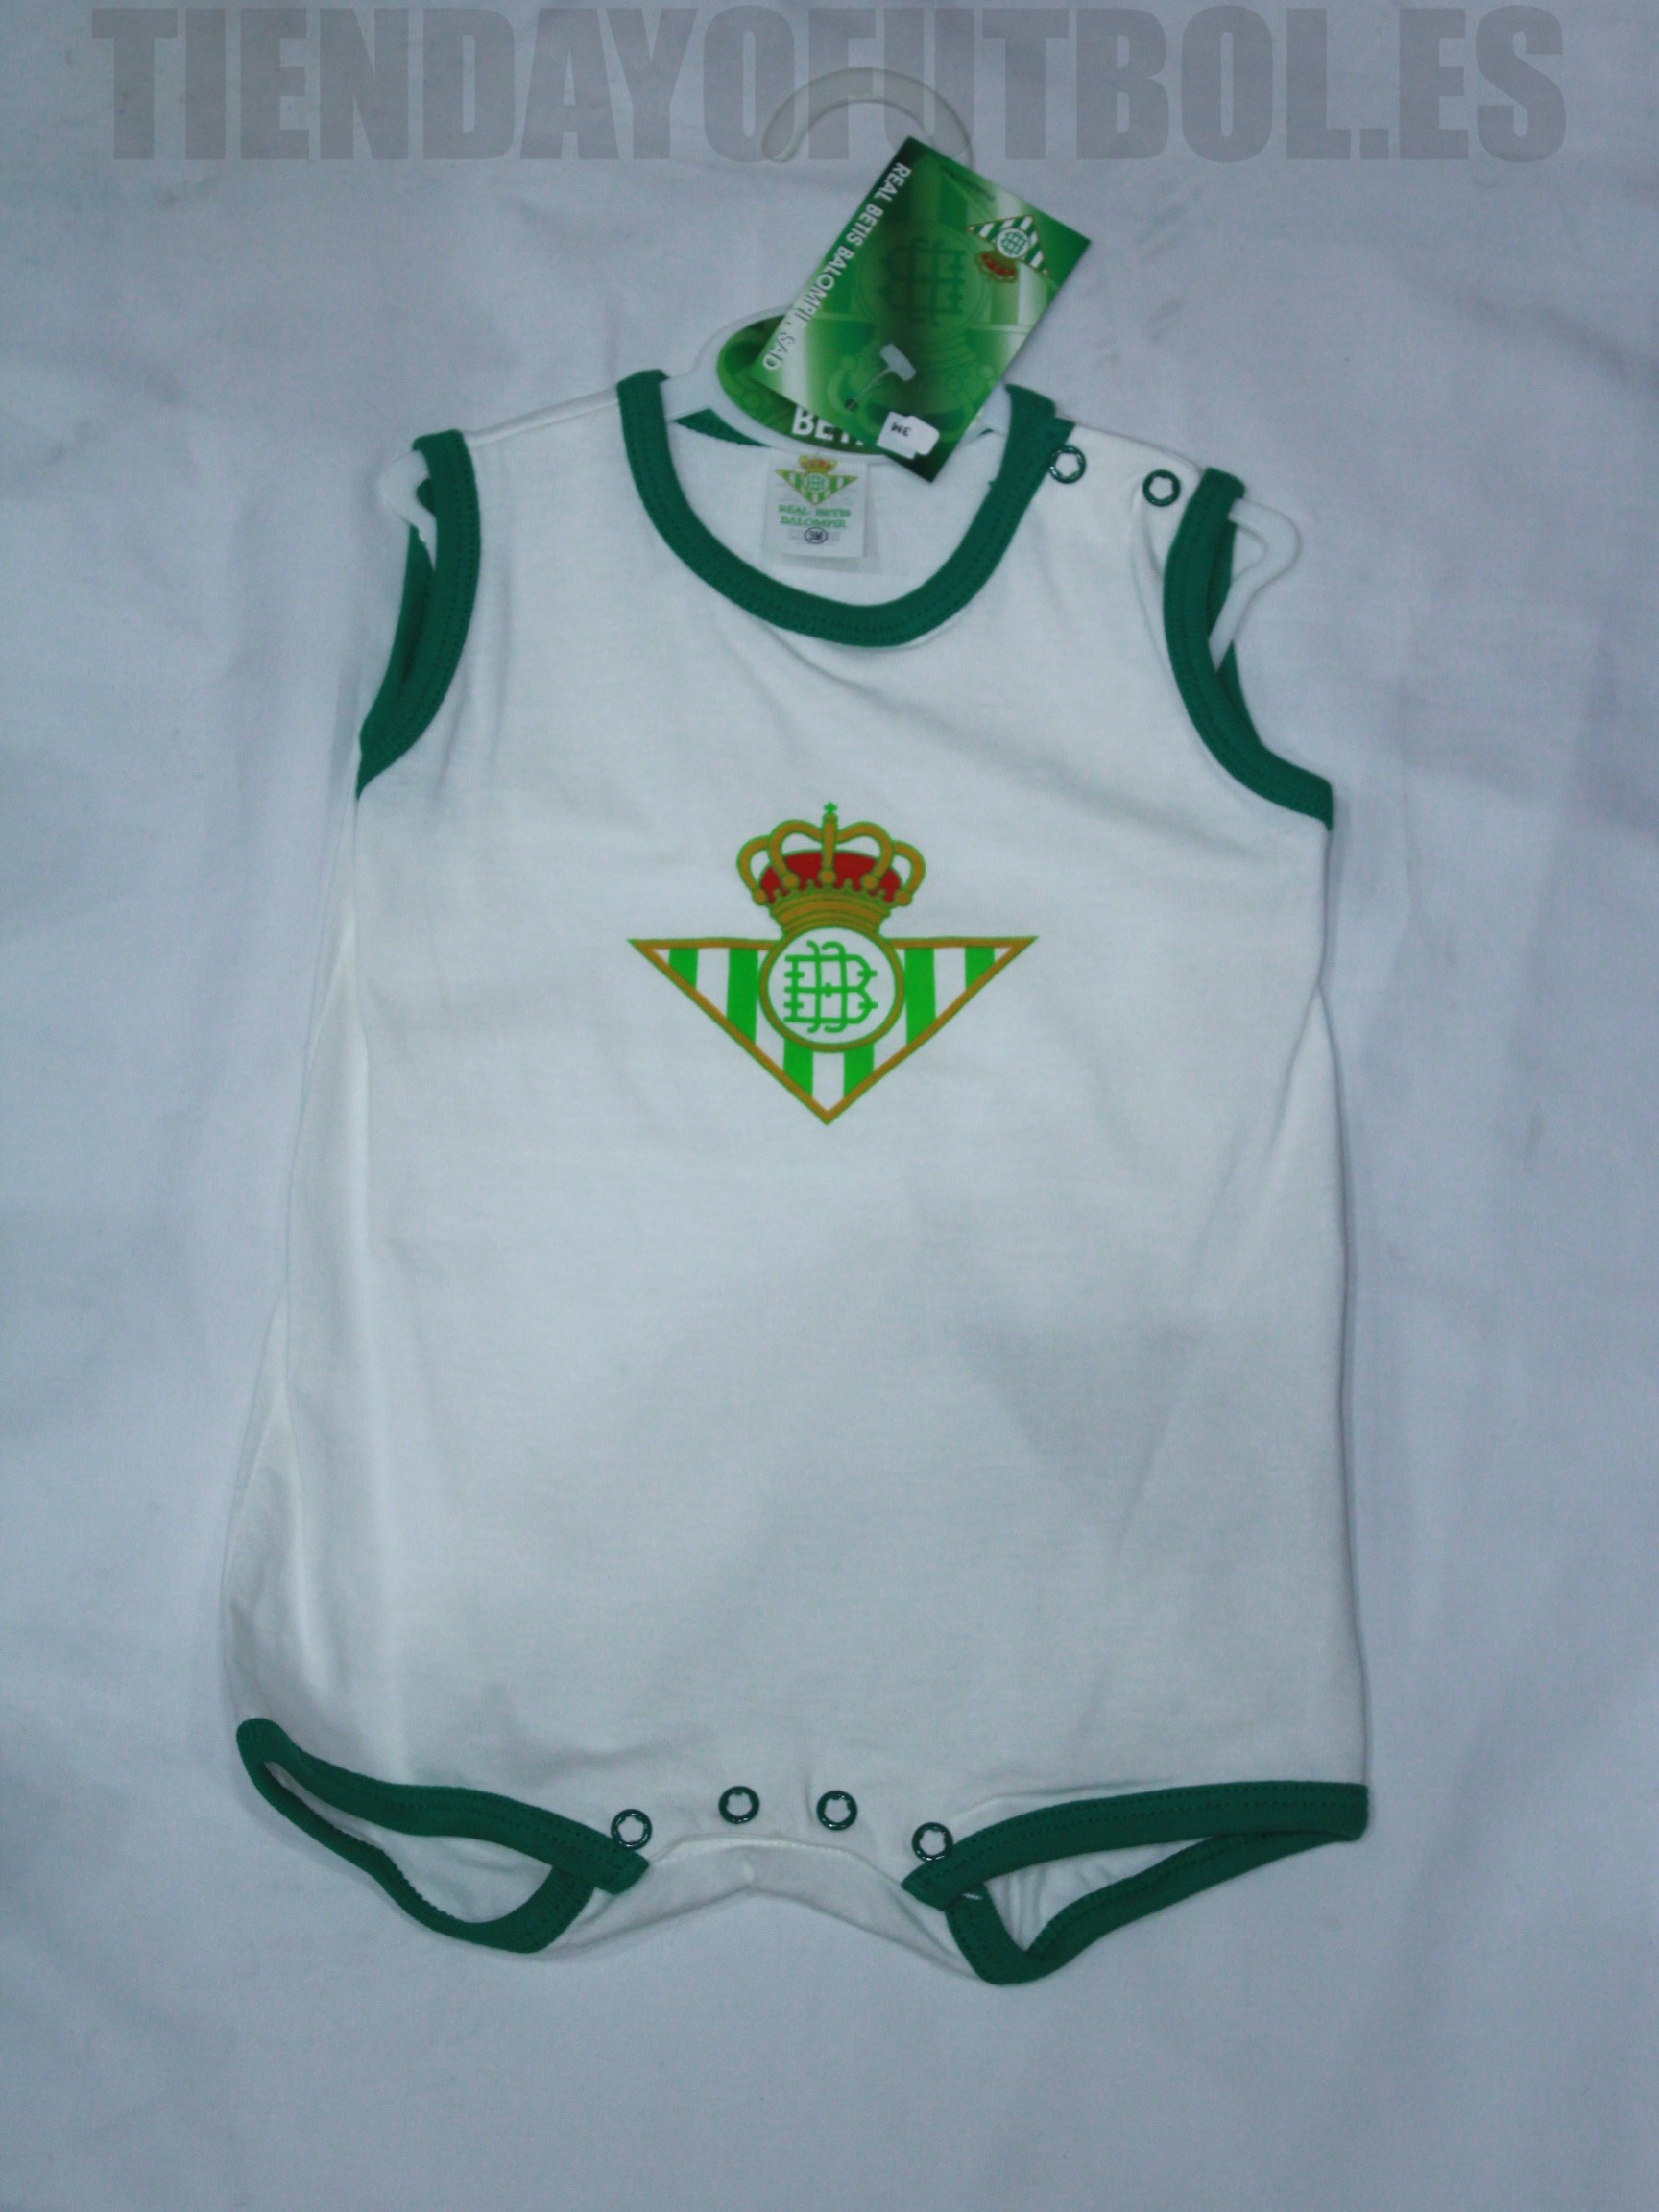 Continuación por ejemplo vena Ranita blanca Real Betis | Pelele verano Real Betis | Ranita bebe betis |  ropita bebe betica | ranita betis bebe